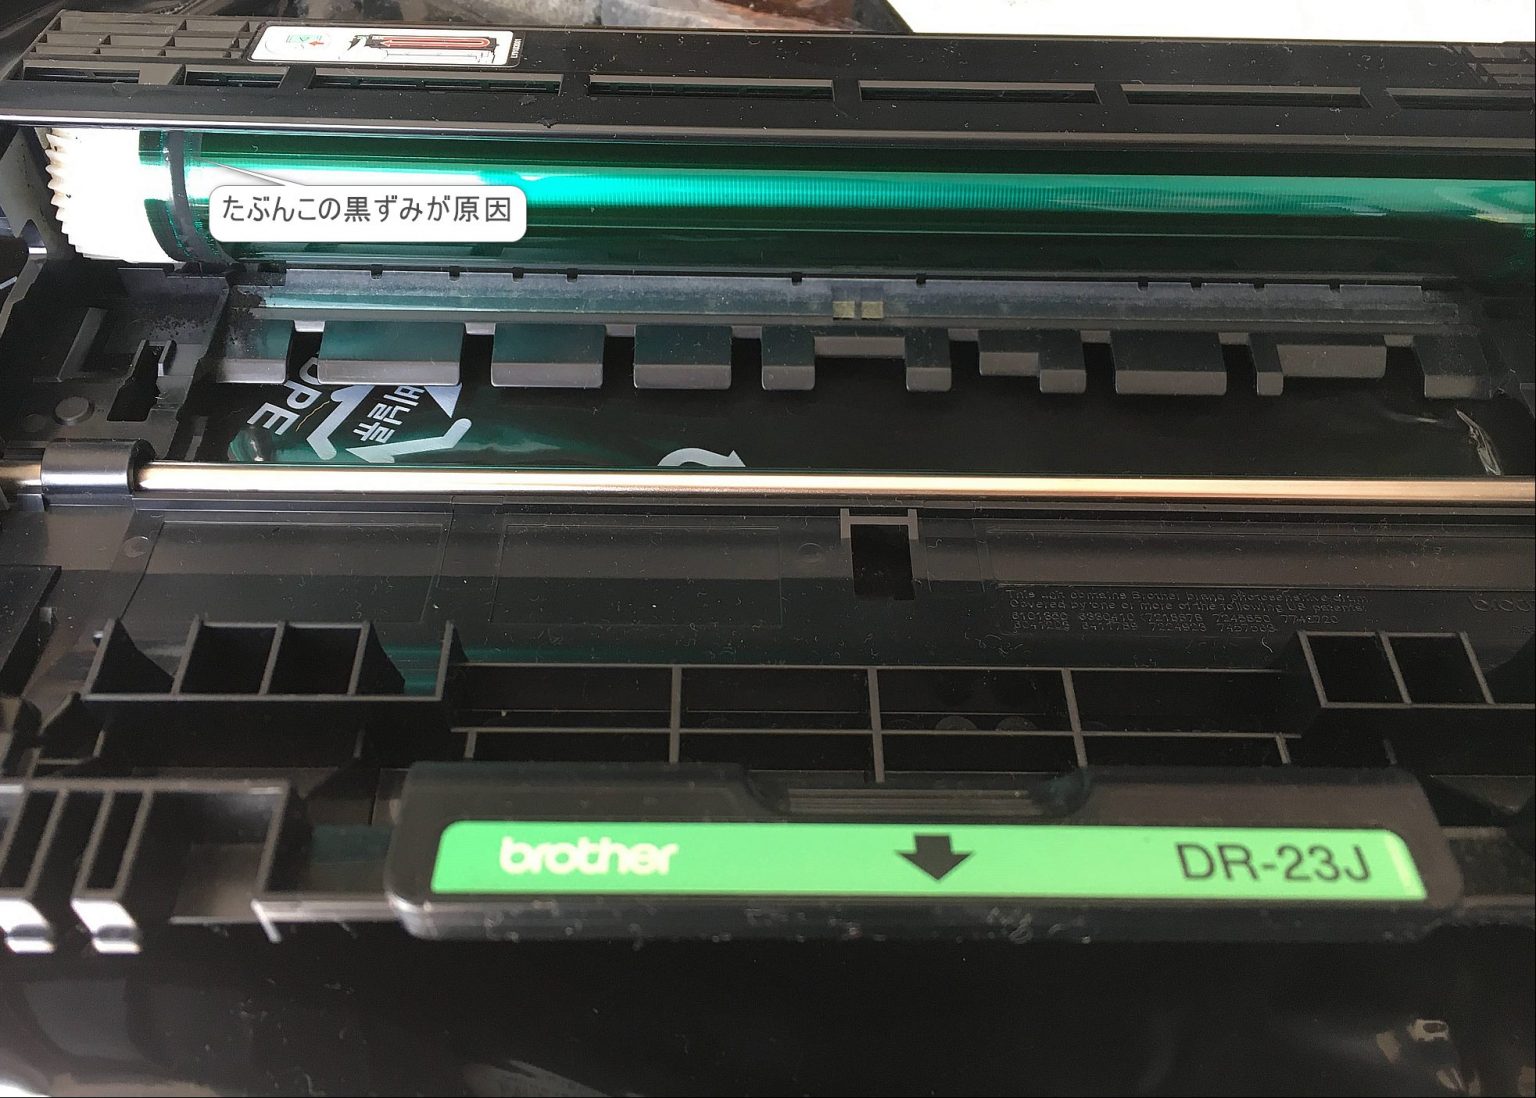 ブラザーレーザープリンター印刷汚れ解決まで【LH-2365DW】 | Random Memorandum